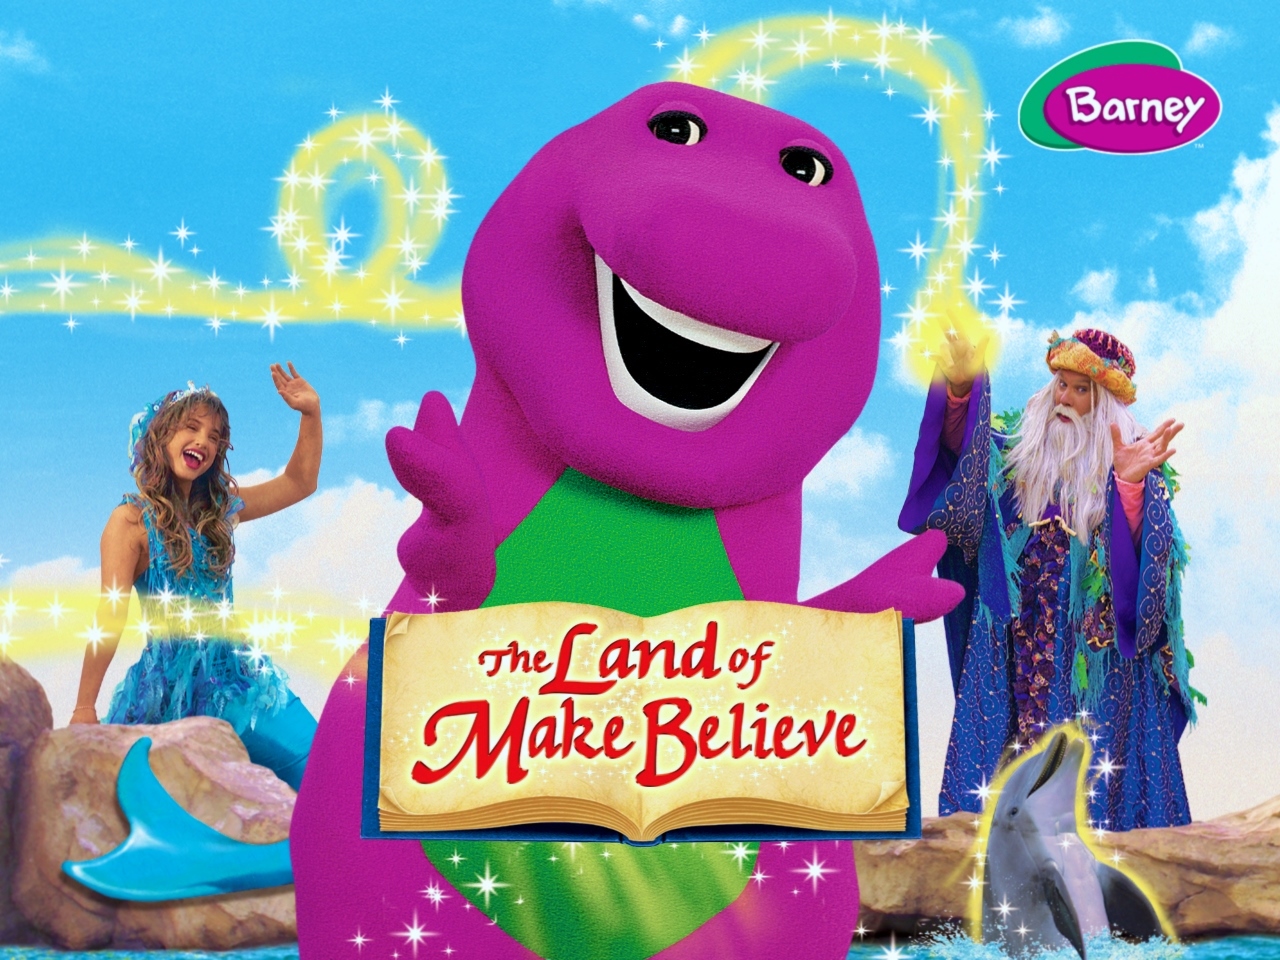 Barney Wallpaper Barney the land of make